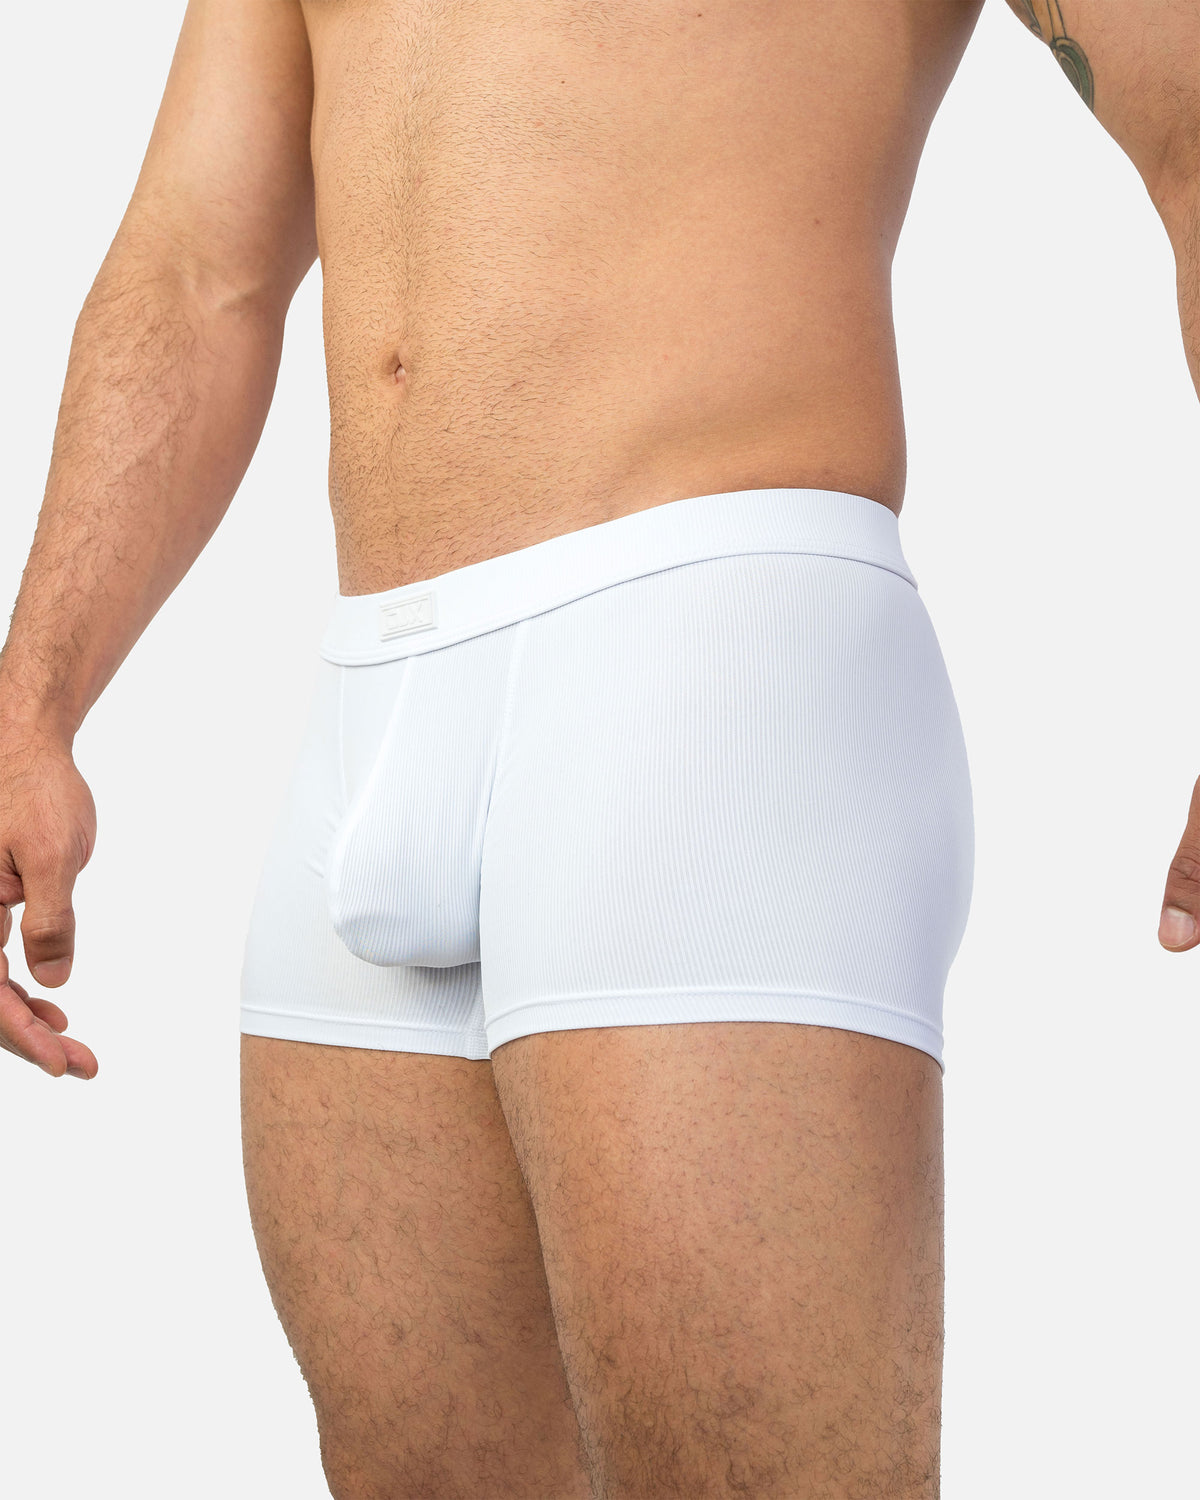 Skivvies Underwear -  Australia